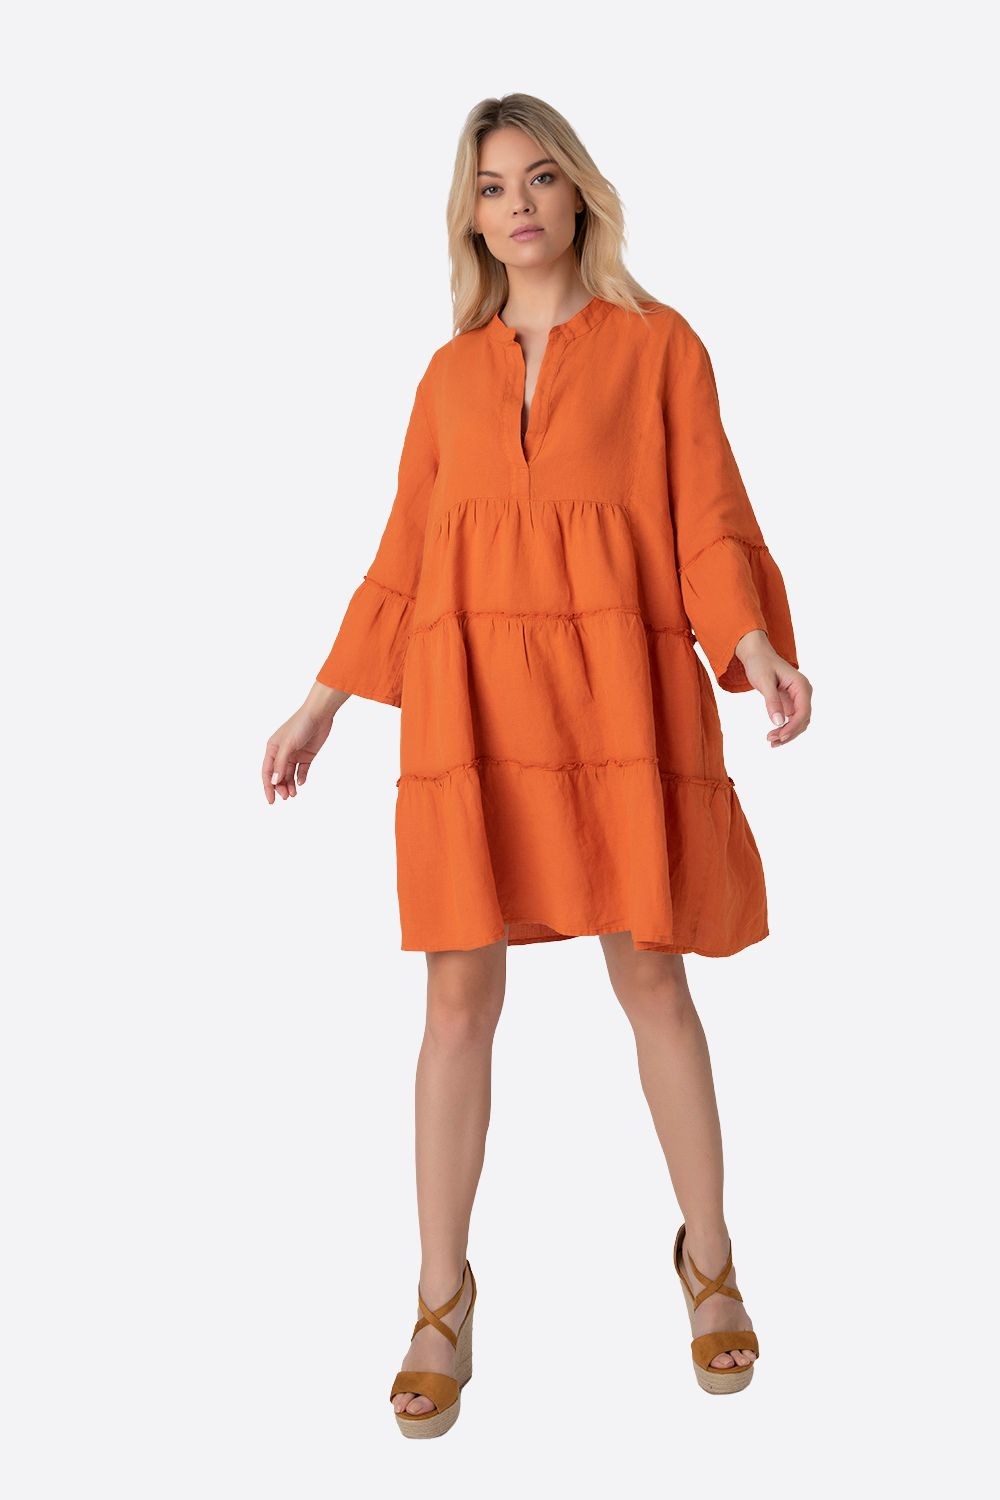 Φόρεμα Boho Πορτοκαλί- My Boutique